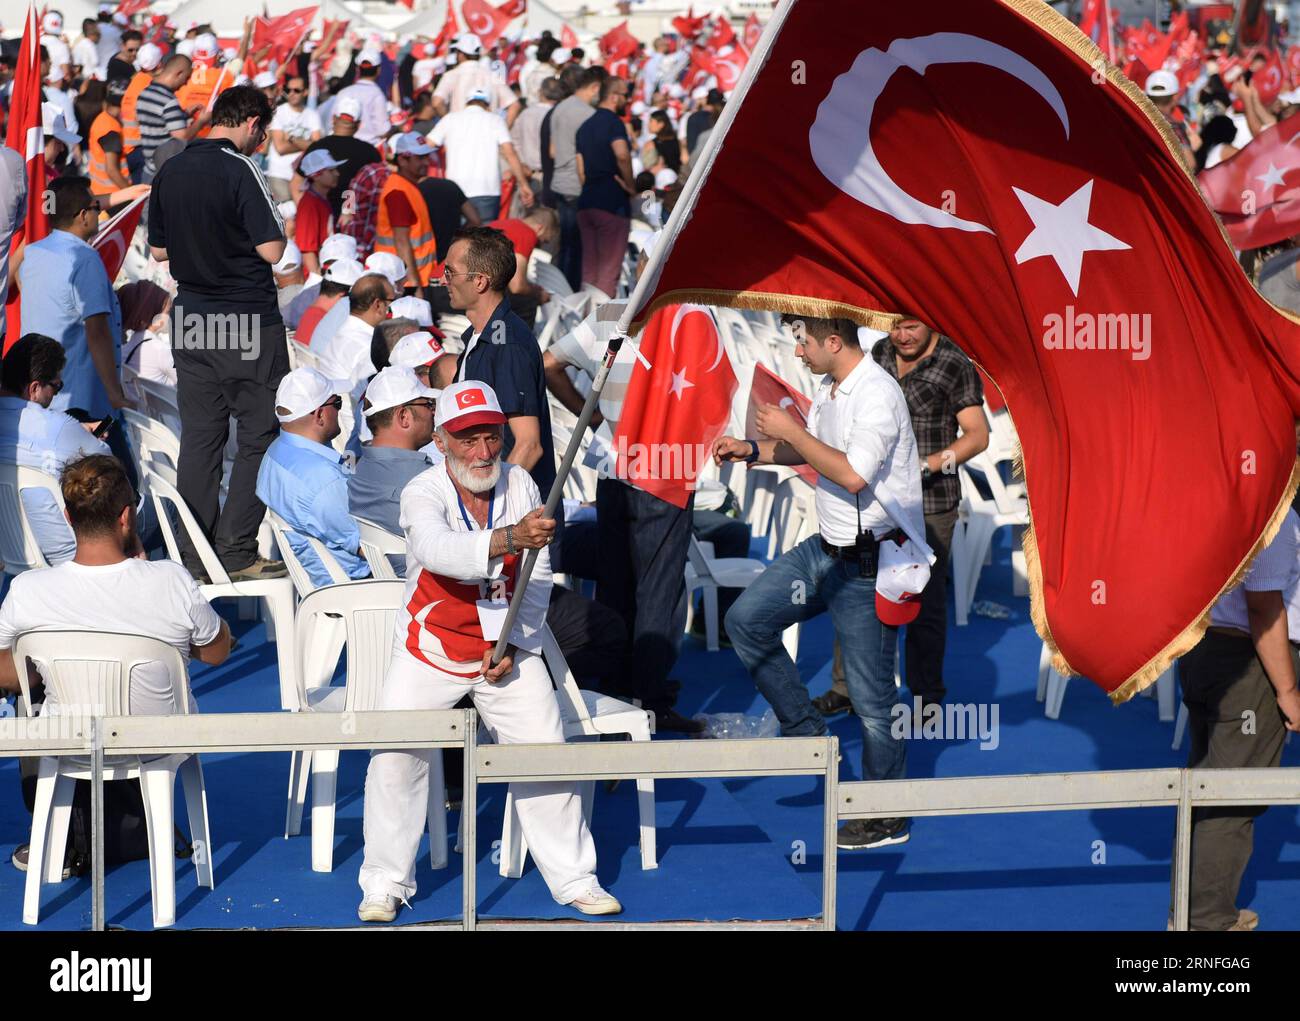 (160808) -- ISTANBUL, 8 agosto 2016 -- Un uomo ondeggia la bandiera nazionale turca durante una manifestazione contro il fallito colpo di stato militare il 15 luglio in piazza Yenikapi di Istanbul, Turchia, il 7 agosto 2016. Settimane di raduni in segno di protesta contro un tentativo di colpo di stato sventato in Turchia sono culminati domenica in un massiccio raduno qui mai visto nella storia moderna del paese che richiedeva un cuore, una nazione. )(yy) TURCHIA-ISTANBUL-RALLY HexCanling PUBLICATIONxNOTxINxCHN 160808 Istanbul 8 agosto 2016 un uomo batte la bandiera nazionale turca durante un raduno contro il fallito colpo di Stato militare IL 15 luglio a Istanbul, Piazza Yenikapi Turke Foto Stock